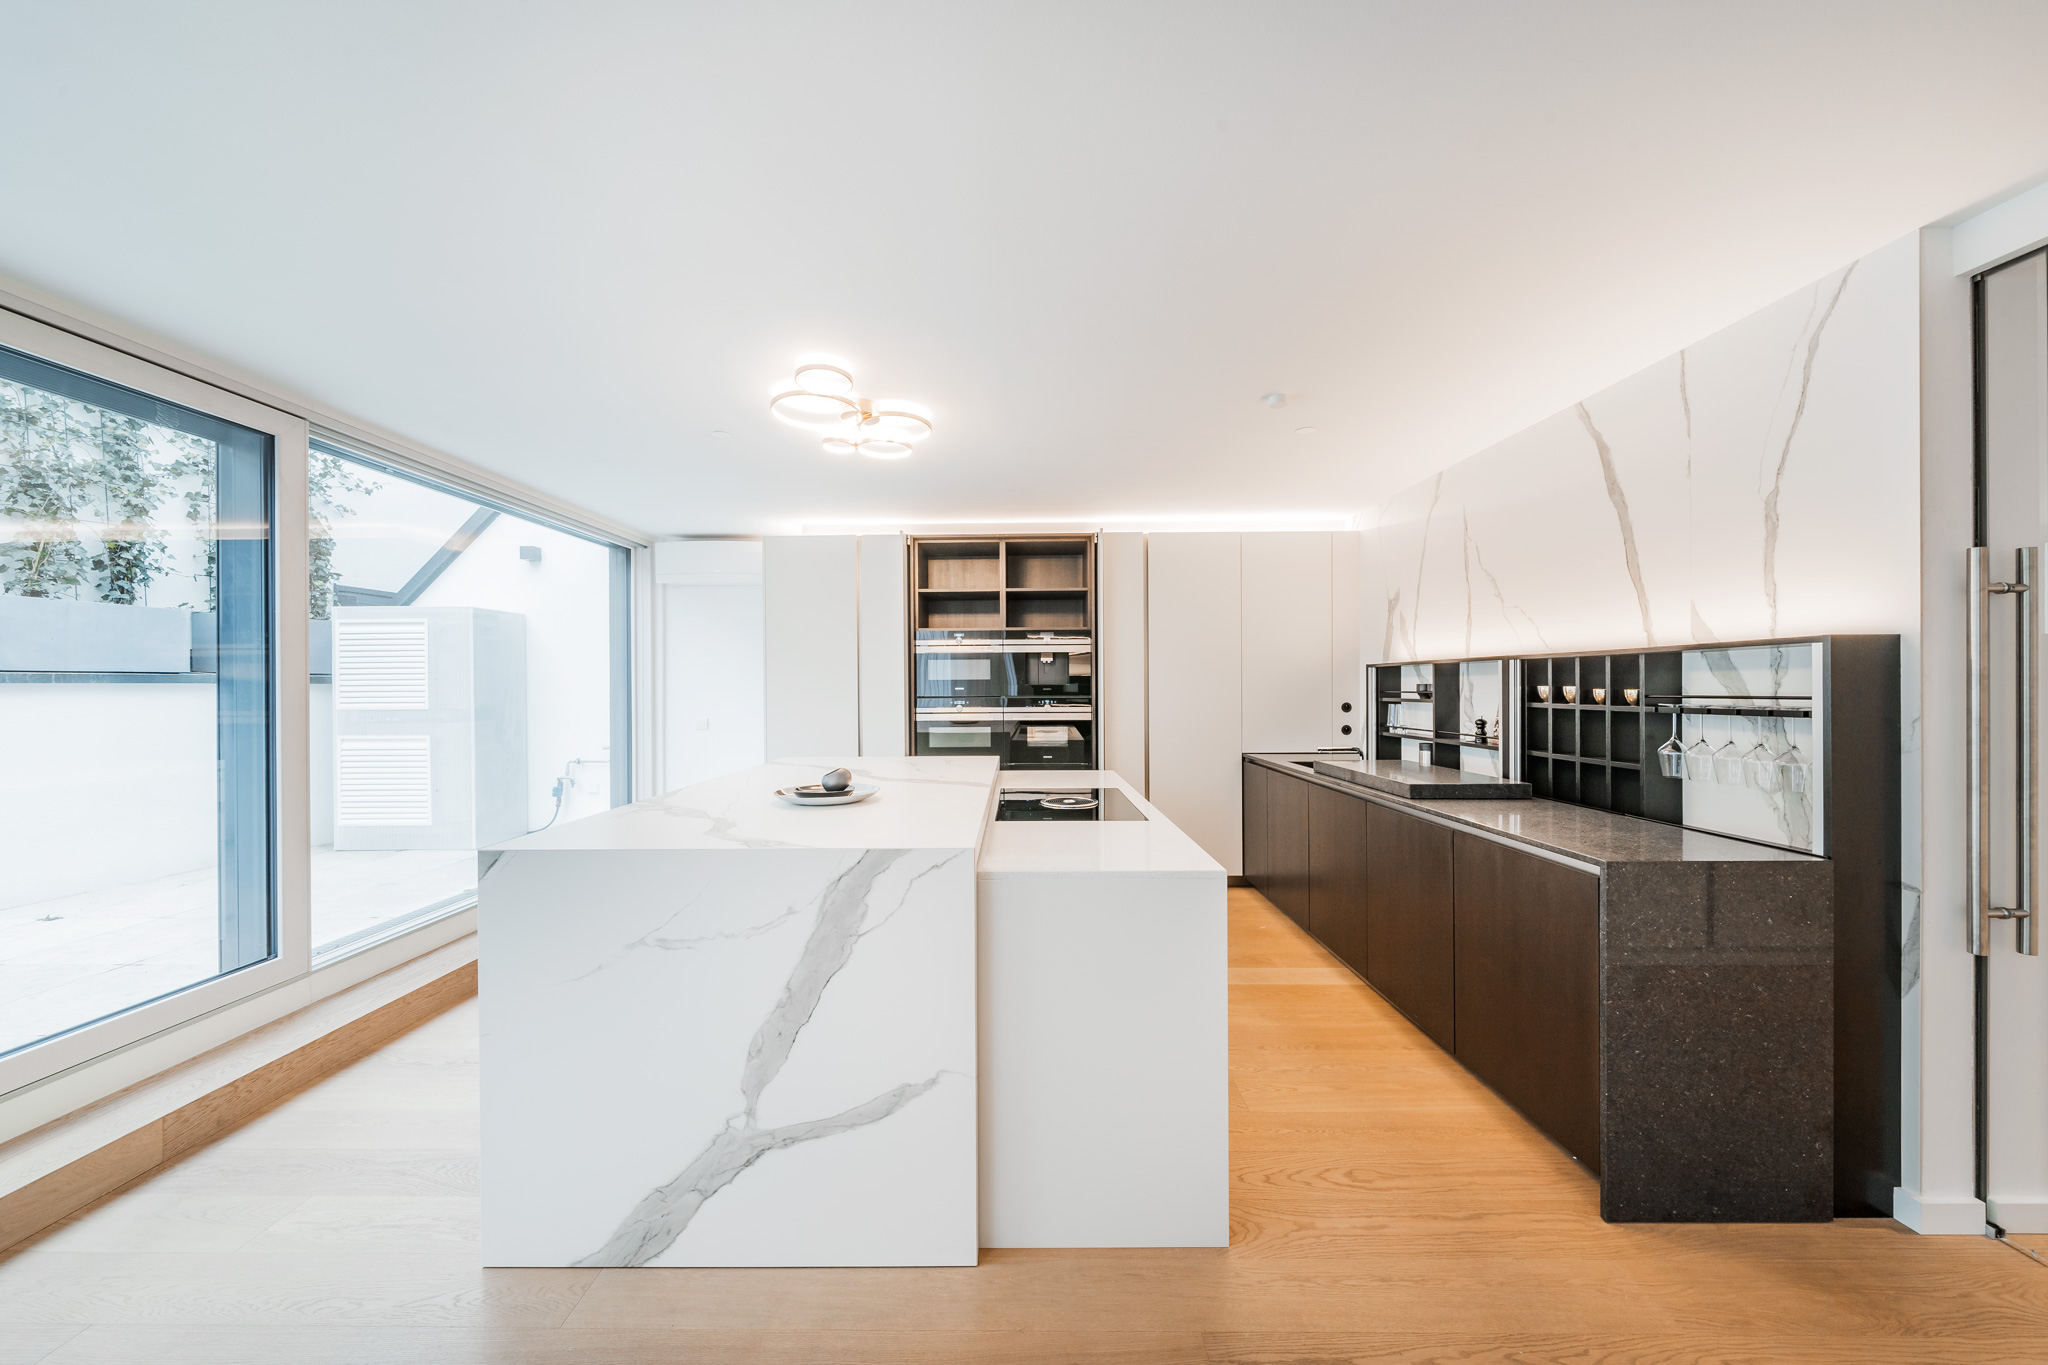 Luxury modern kitchen